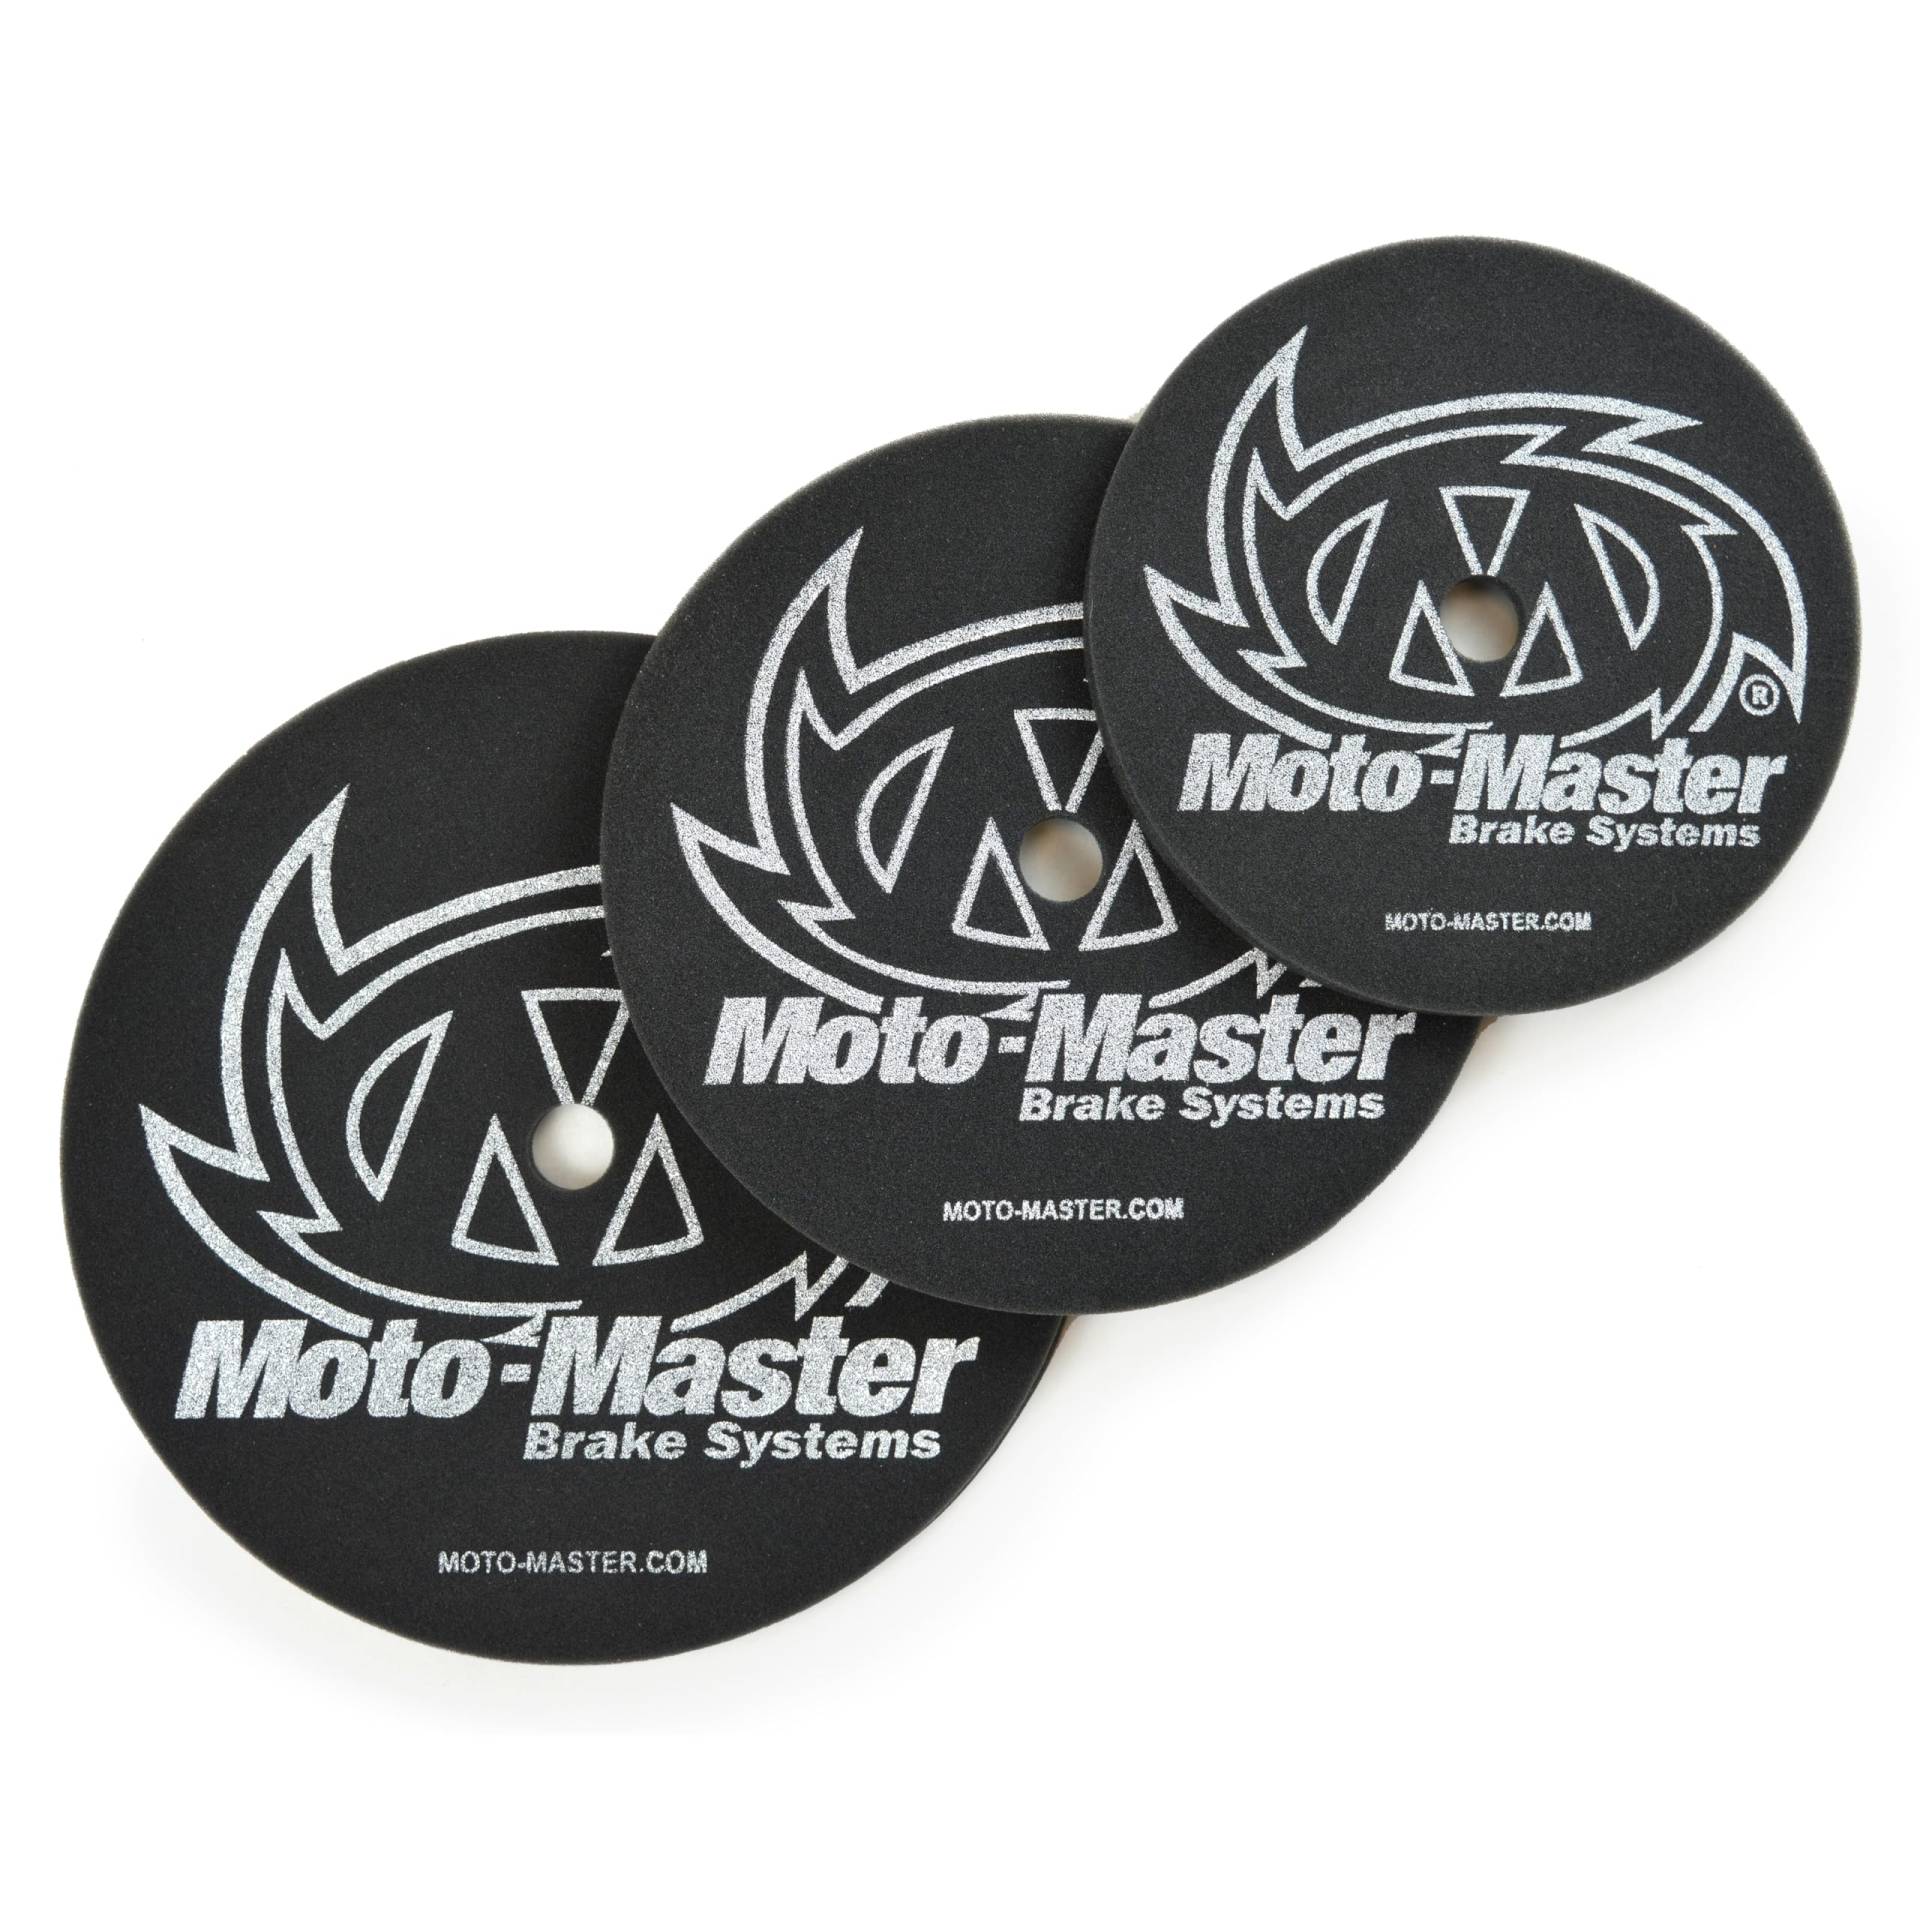 Moto Master Moto-Master Schaumstoff-Scheibenabdeckung 200 mm - 245 mm von Moto Master